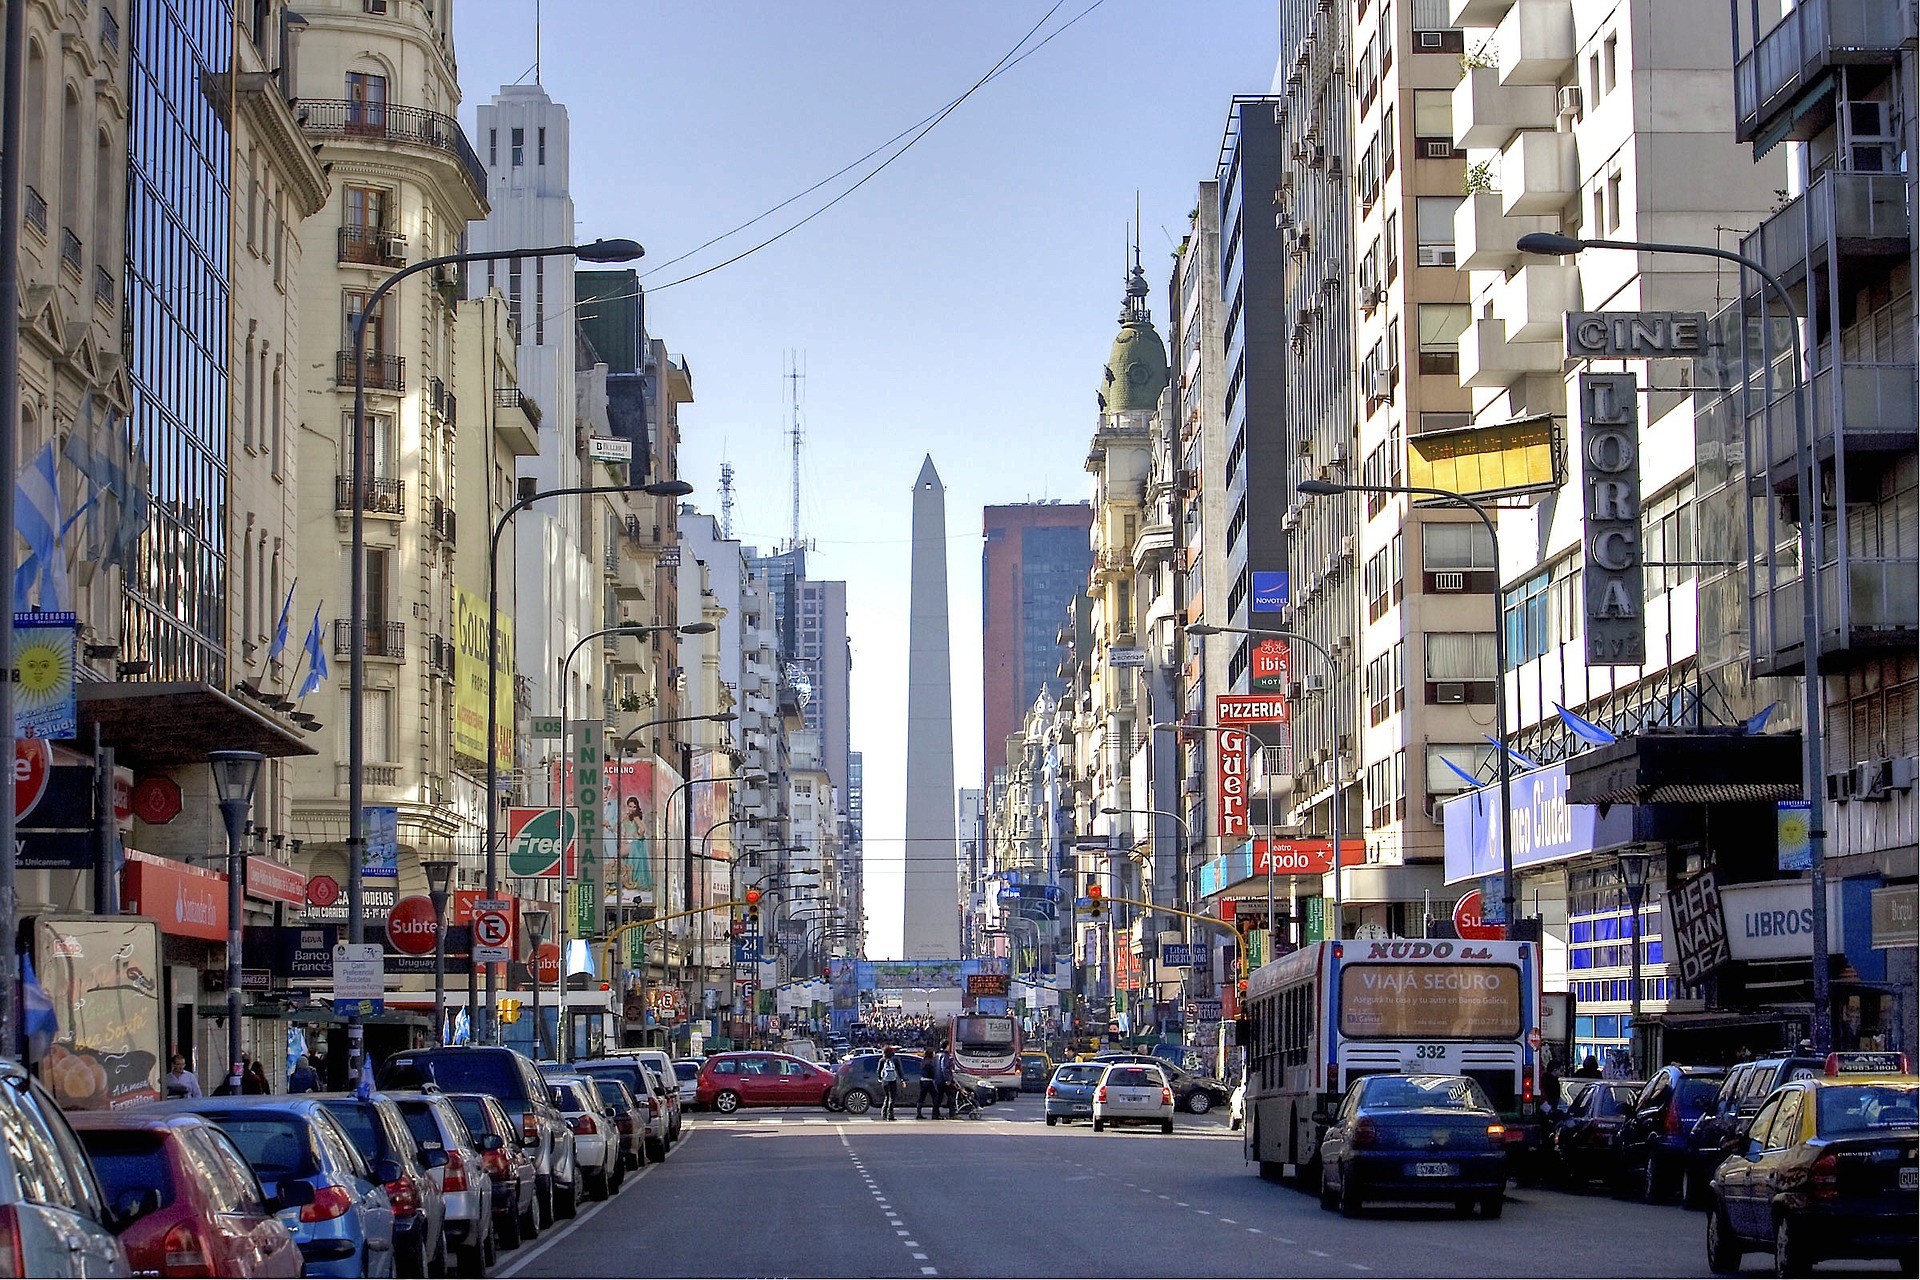 Strade del centro di Buenos Aires, Argentina - Foto di Herbert Brant da Pixabay